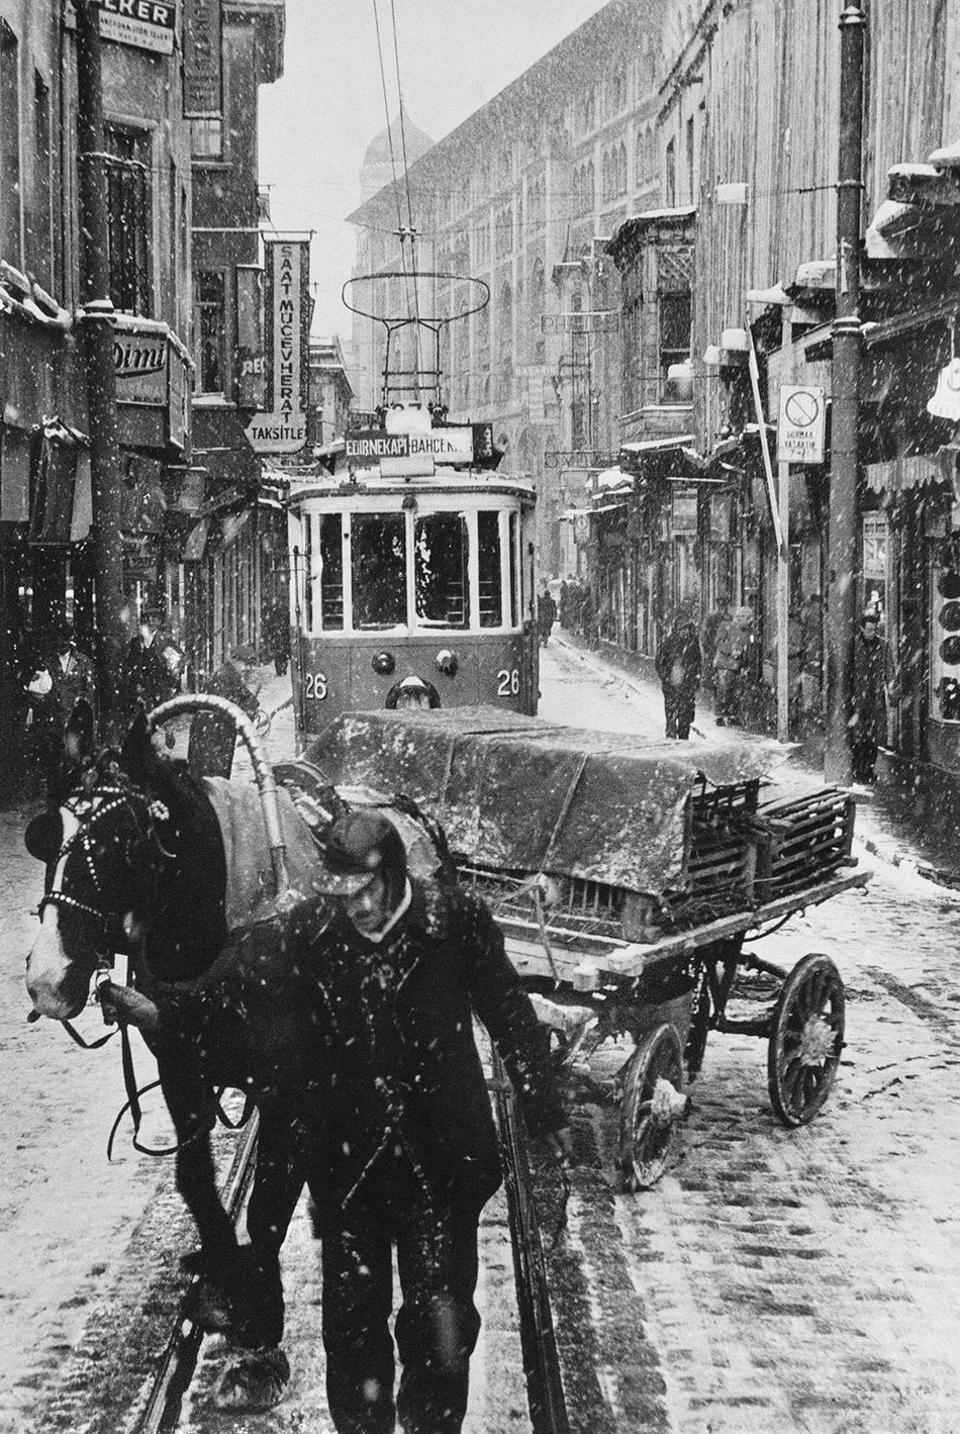 ترام وأمامه حصان يجرّ عربة في يوم شتائي من سنة 1956 بسيركجي